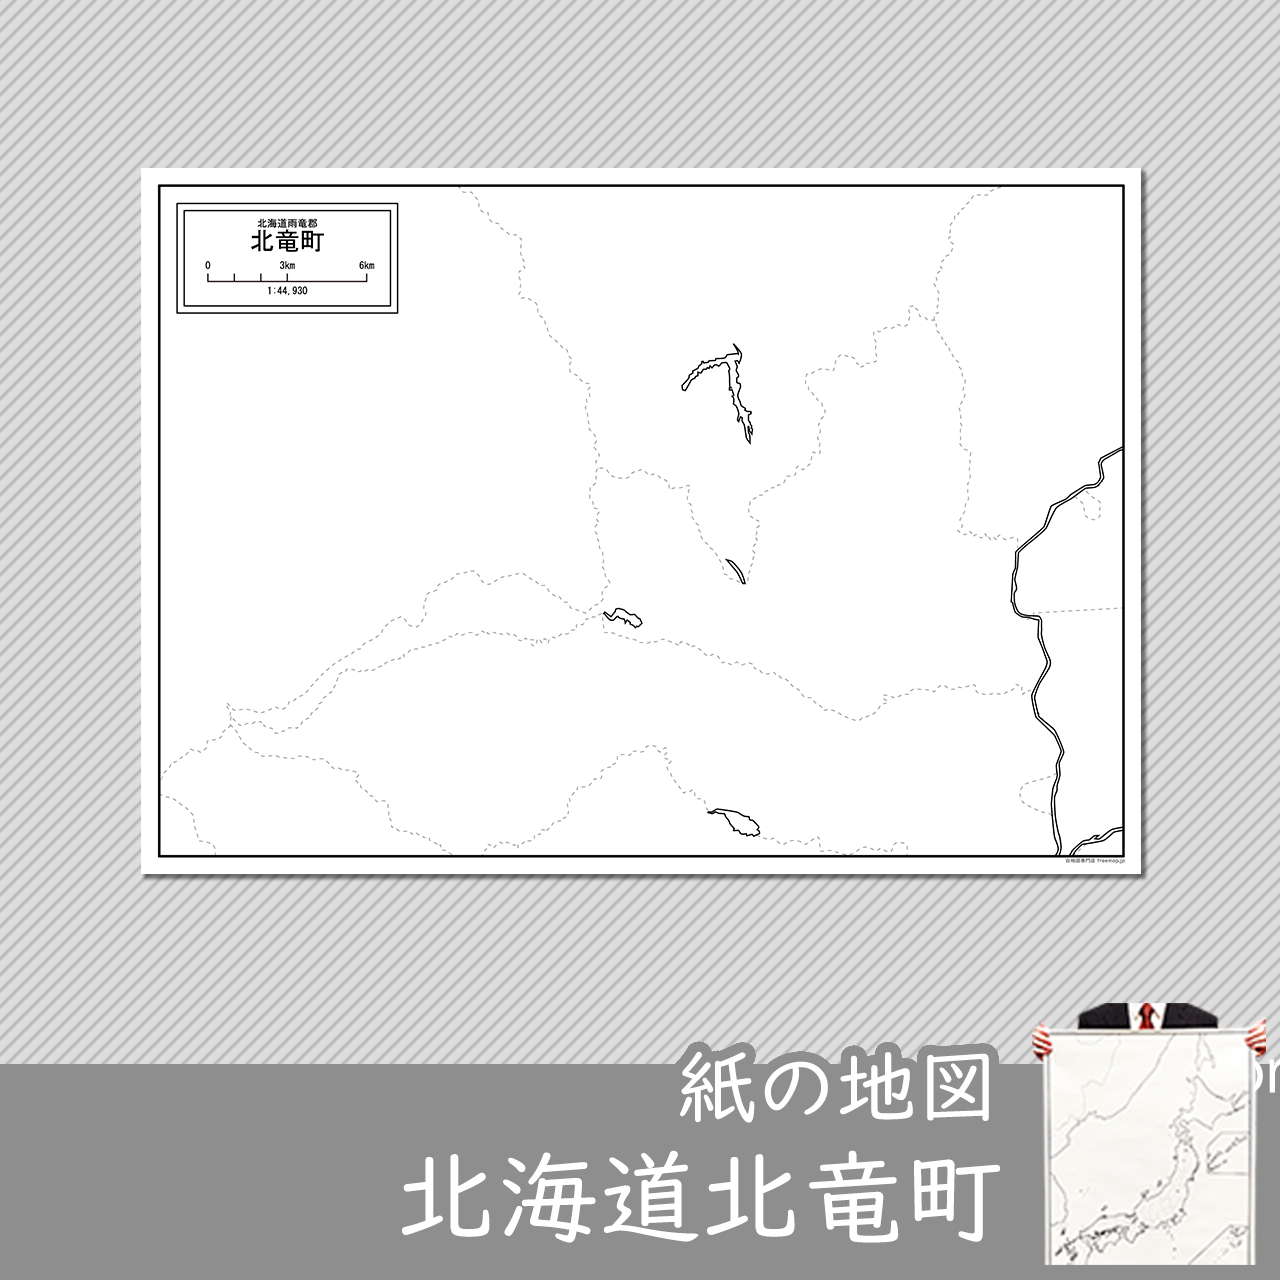 北竜町の紙の白地図のサムネイル